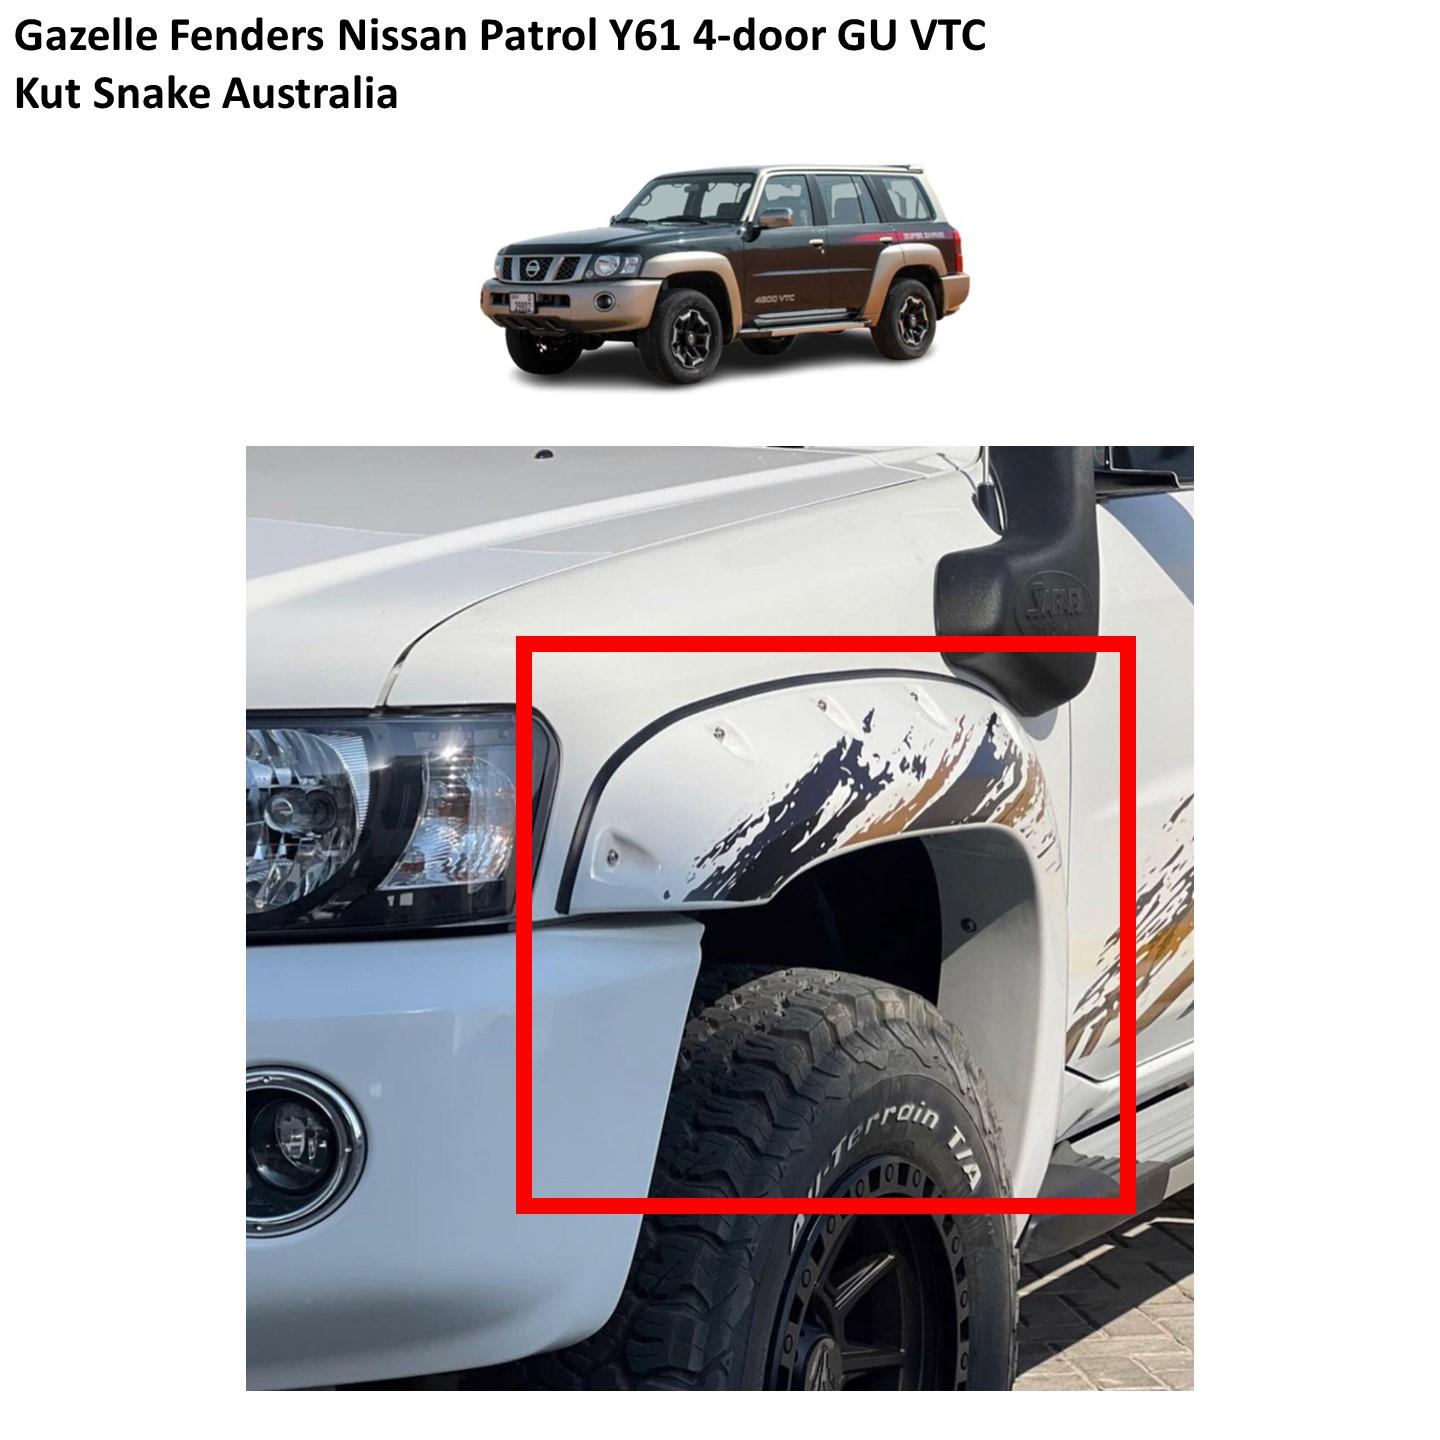 Gazelle Fenders Nissan Patrol Y61 4-door GU VTC (Kut Snake Australia)